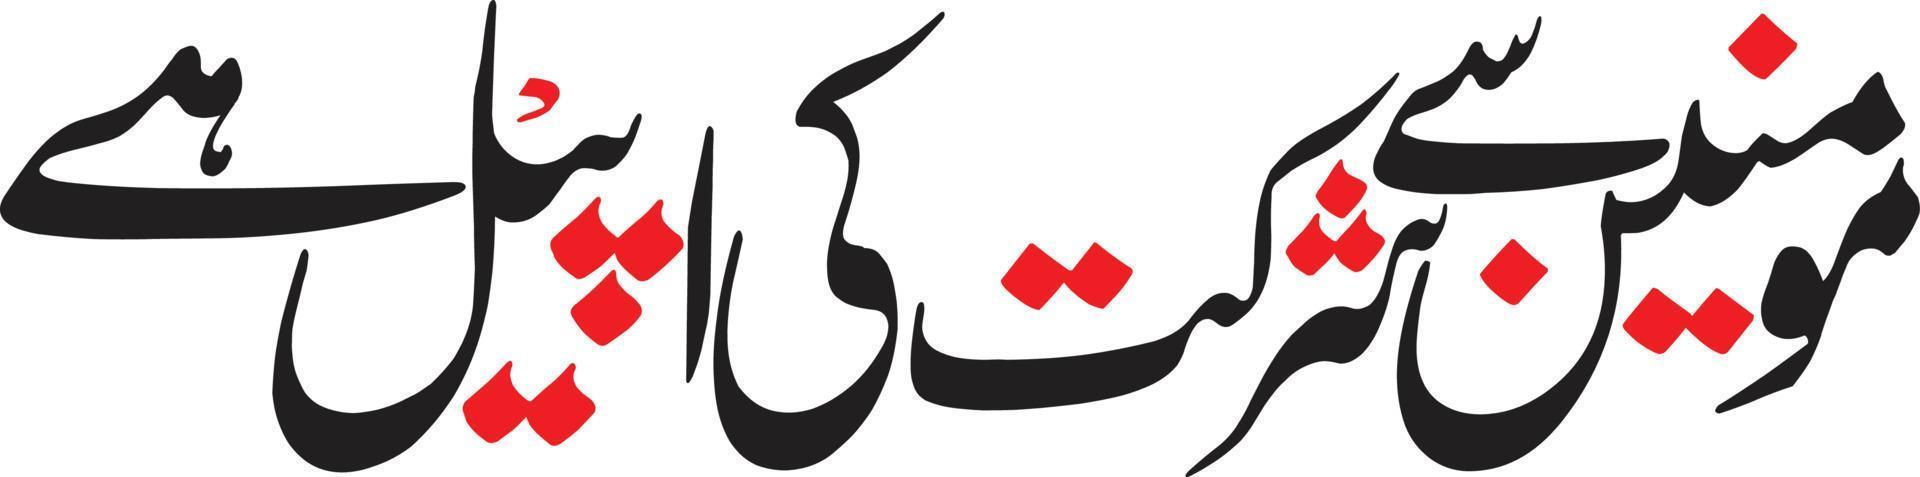 momneen sey sherkat ki apeel hay titel islamische urdu arabische kalligrafie kostenloser vektor